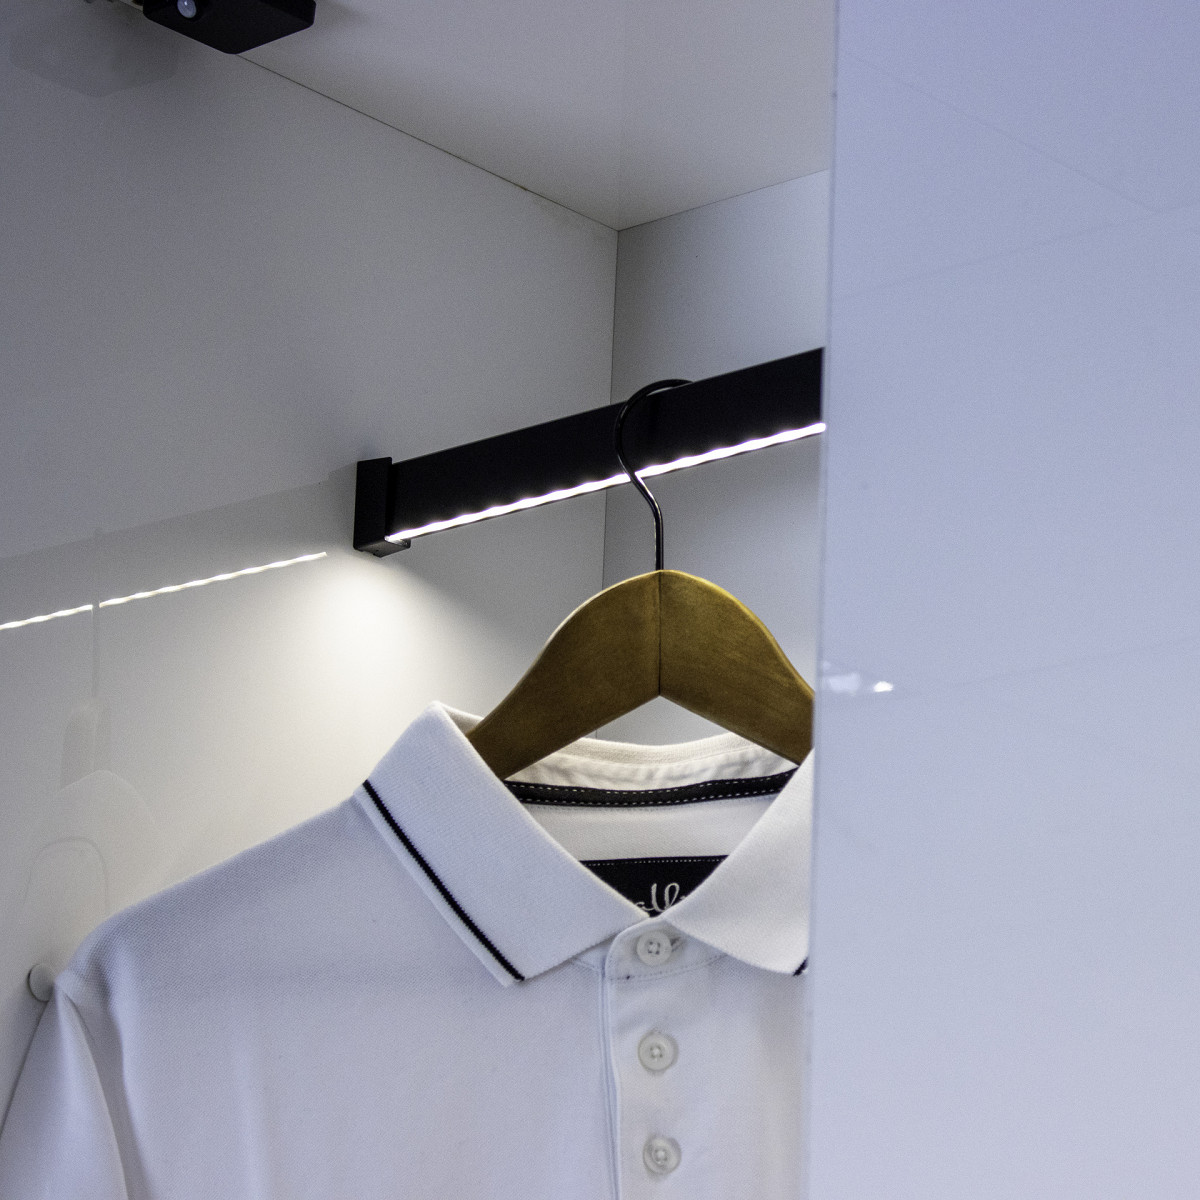 RELING SLIM prostokątny drążek do szaf i garderób w 2 kolorach aluminium i czarny z taśmą LED na wymiar (4)